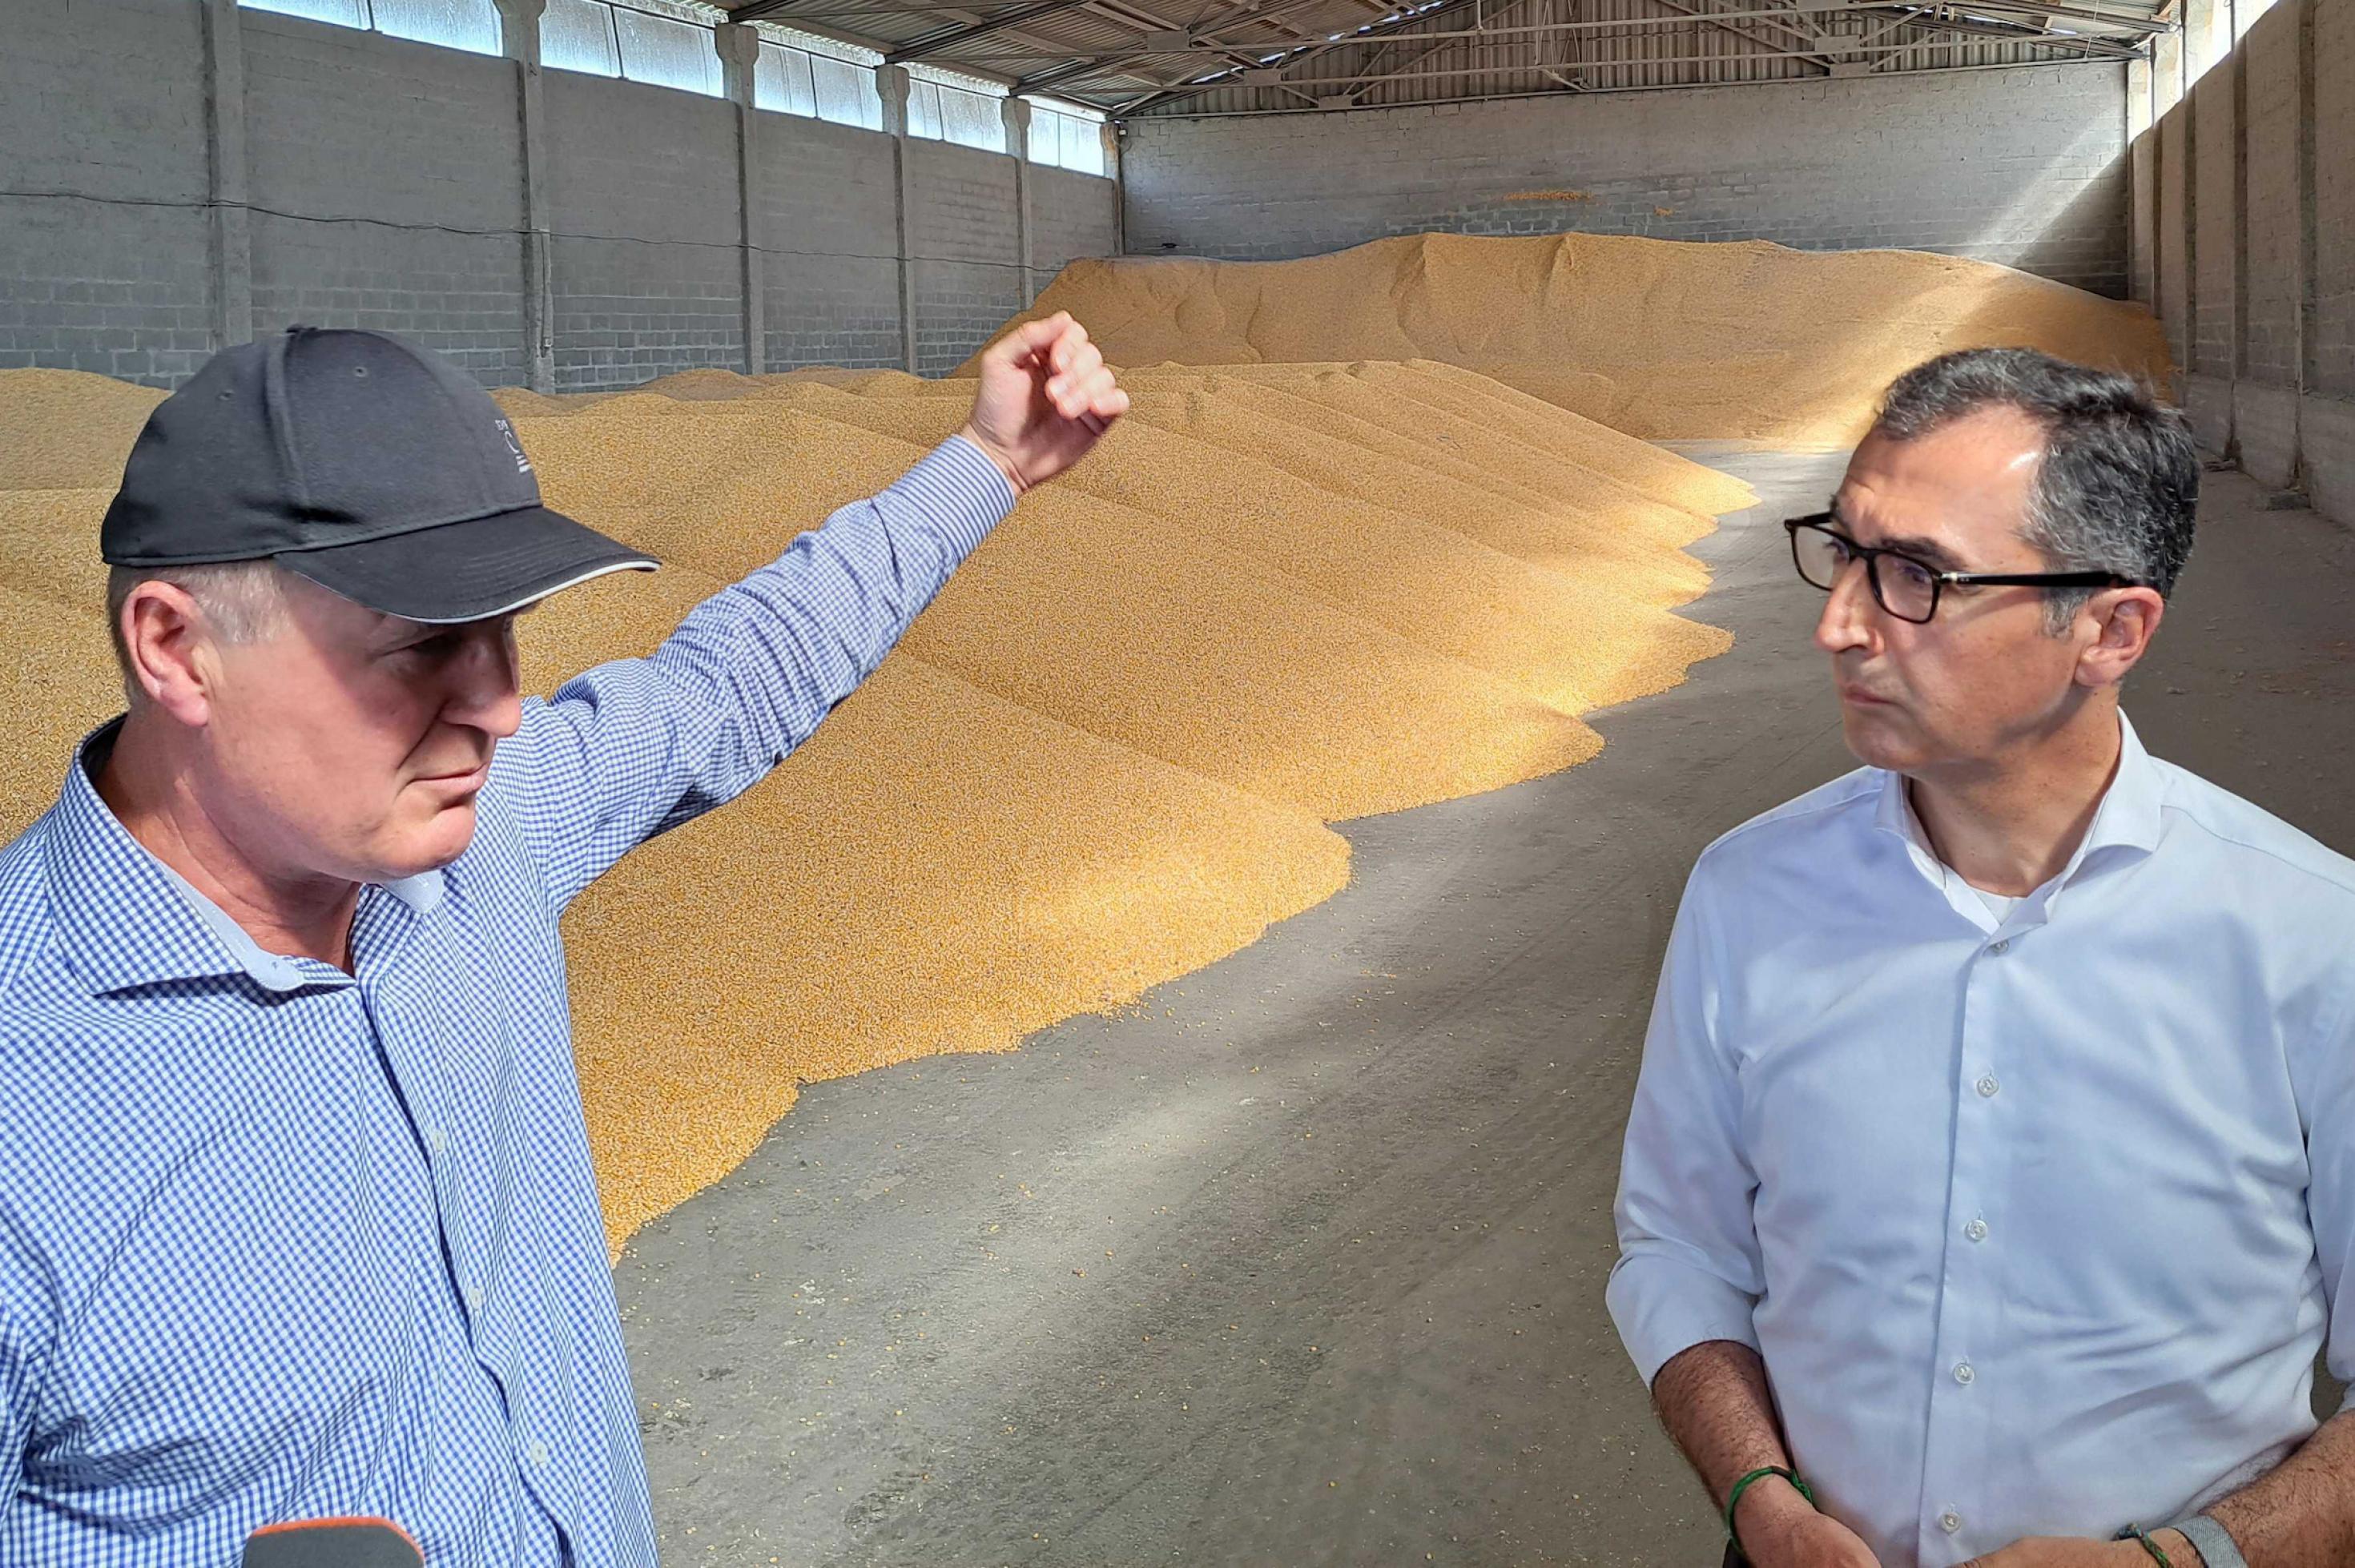 Cem Özdemir (r, Bündnis 90/Die Grünen), Bundesminister für Ernährung und Landwirtschaft, besichtigt mit Landwirt Viktor Scheremeta eine Halle in der Mais gelagert wird.